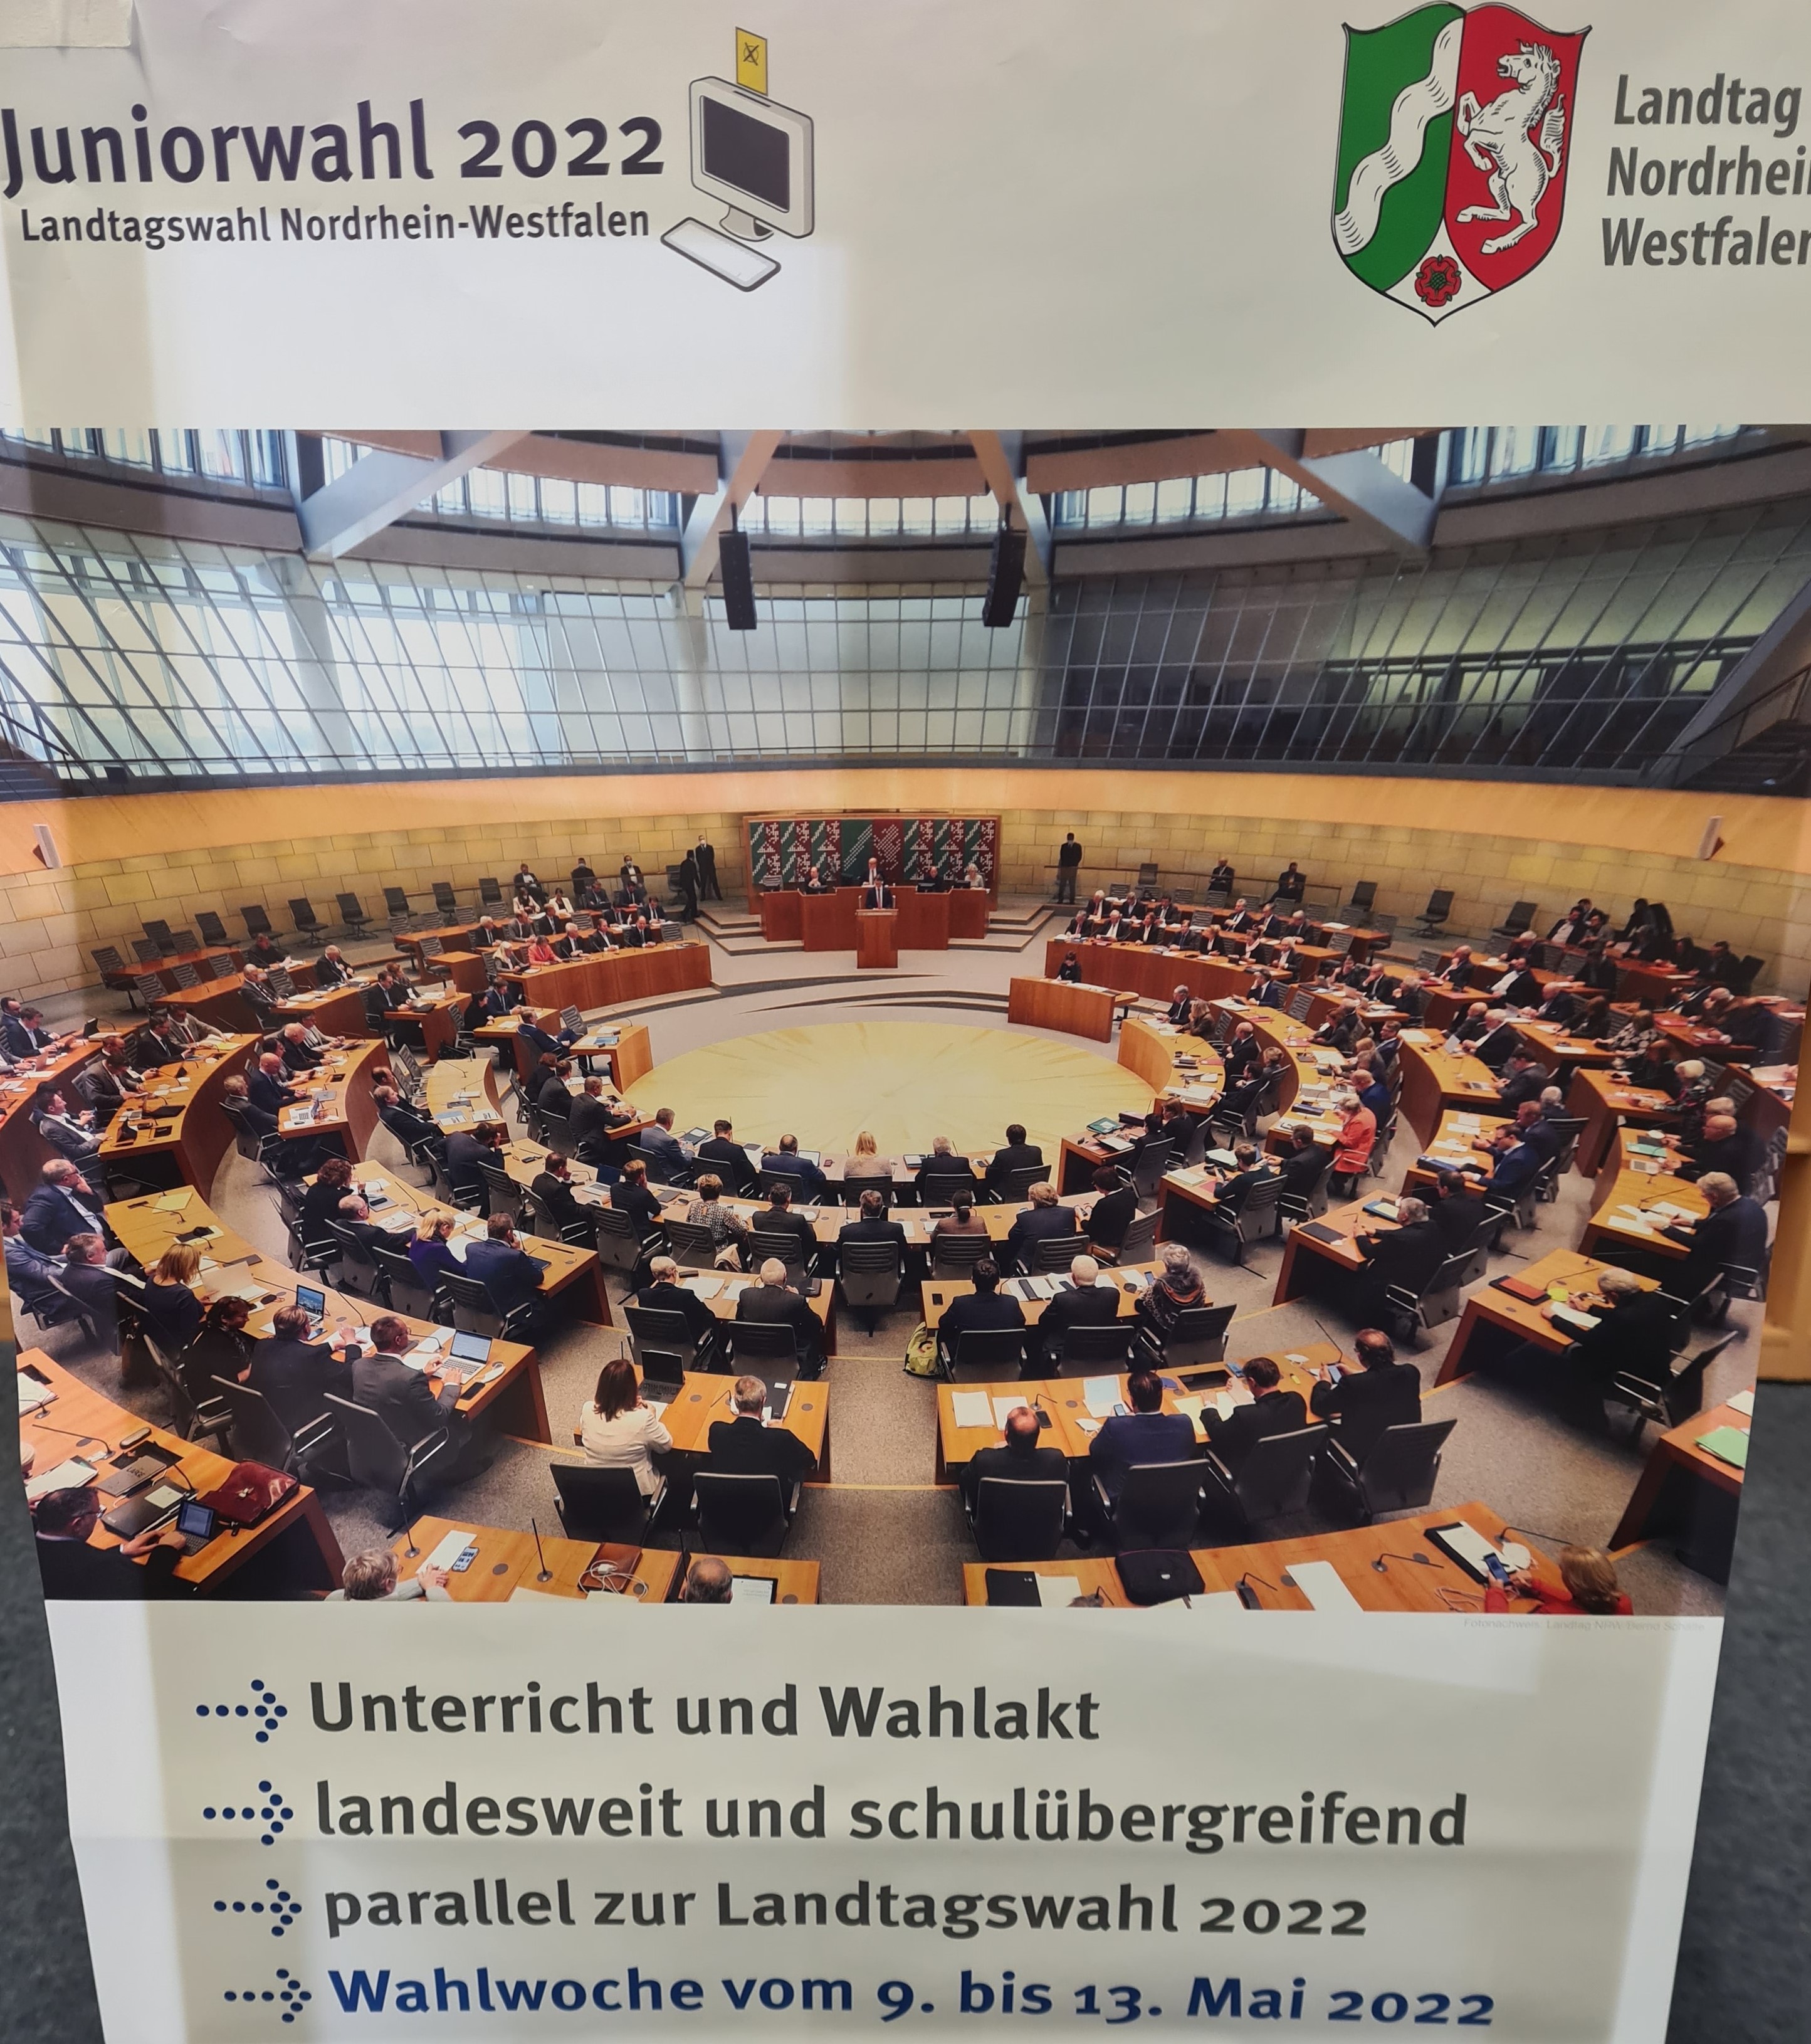 Juniorwahl zur Landtagswahl 2022